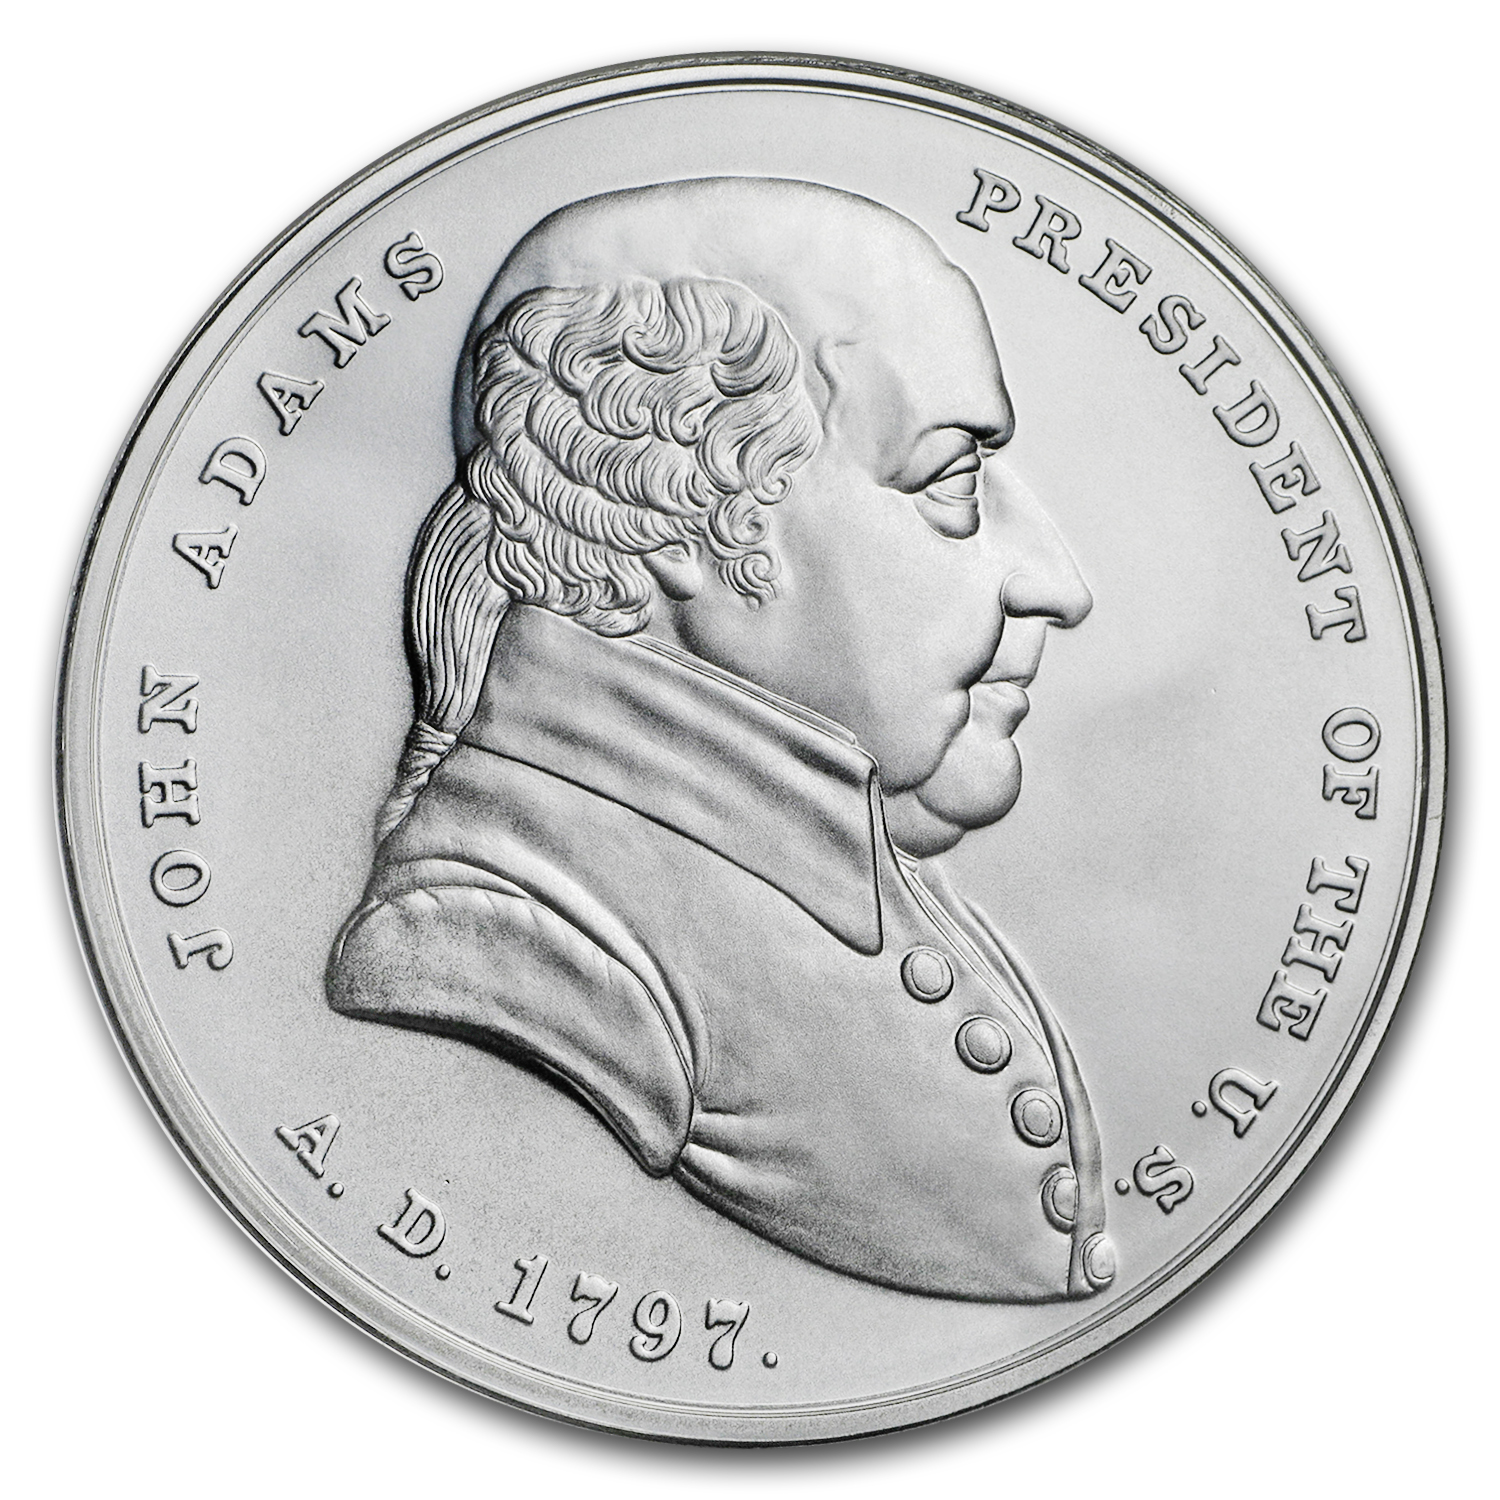 Buy U.S. Mint Silver John Adams Presidential Medal